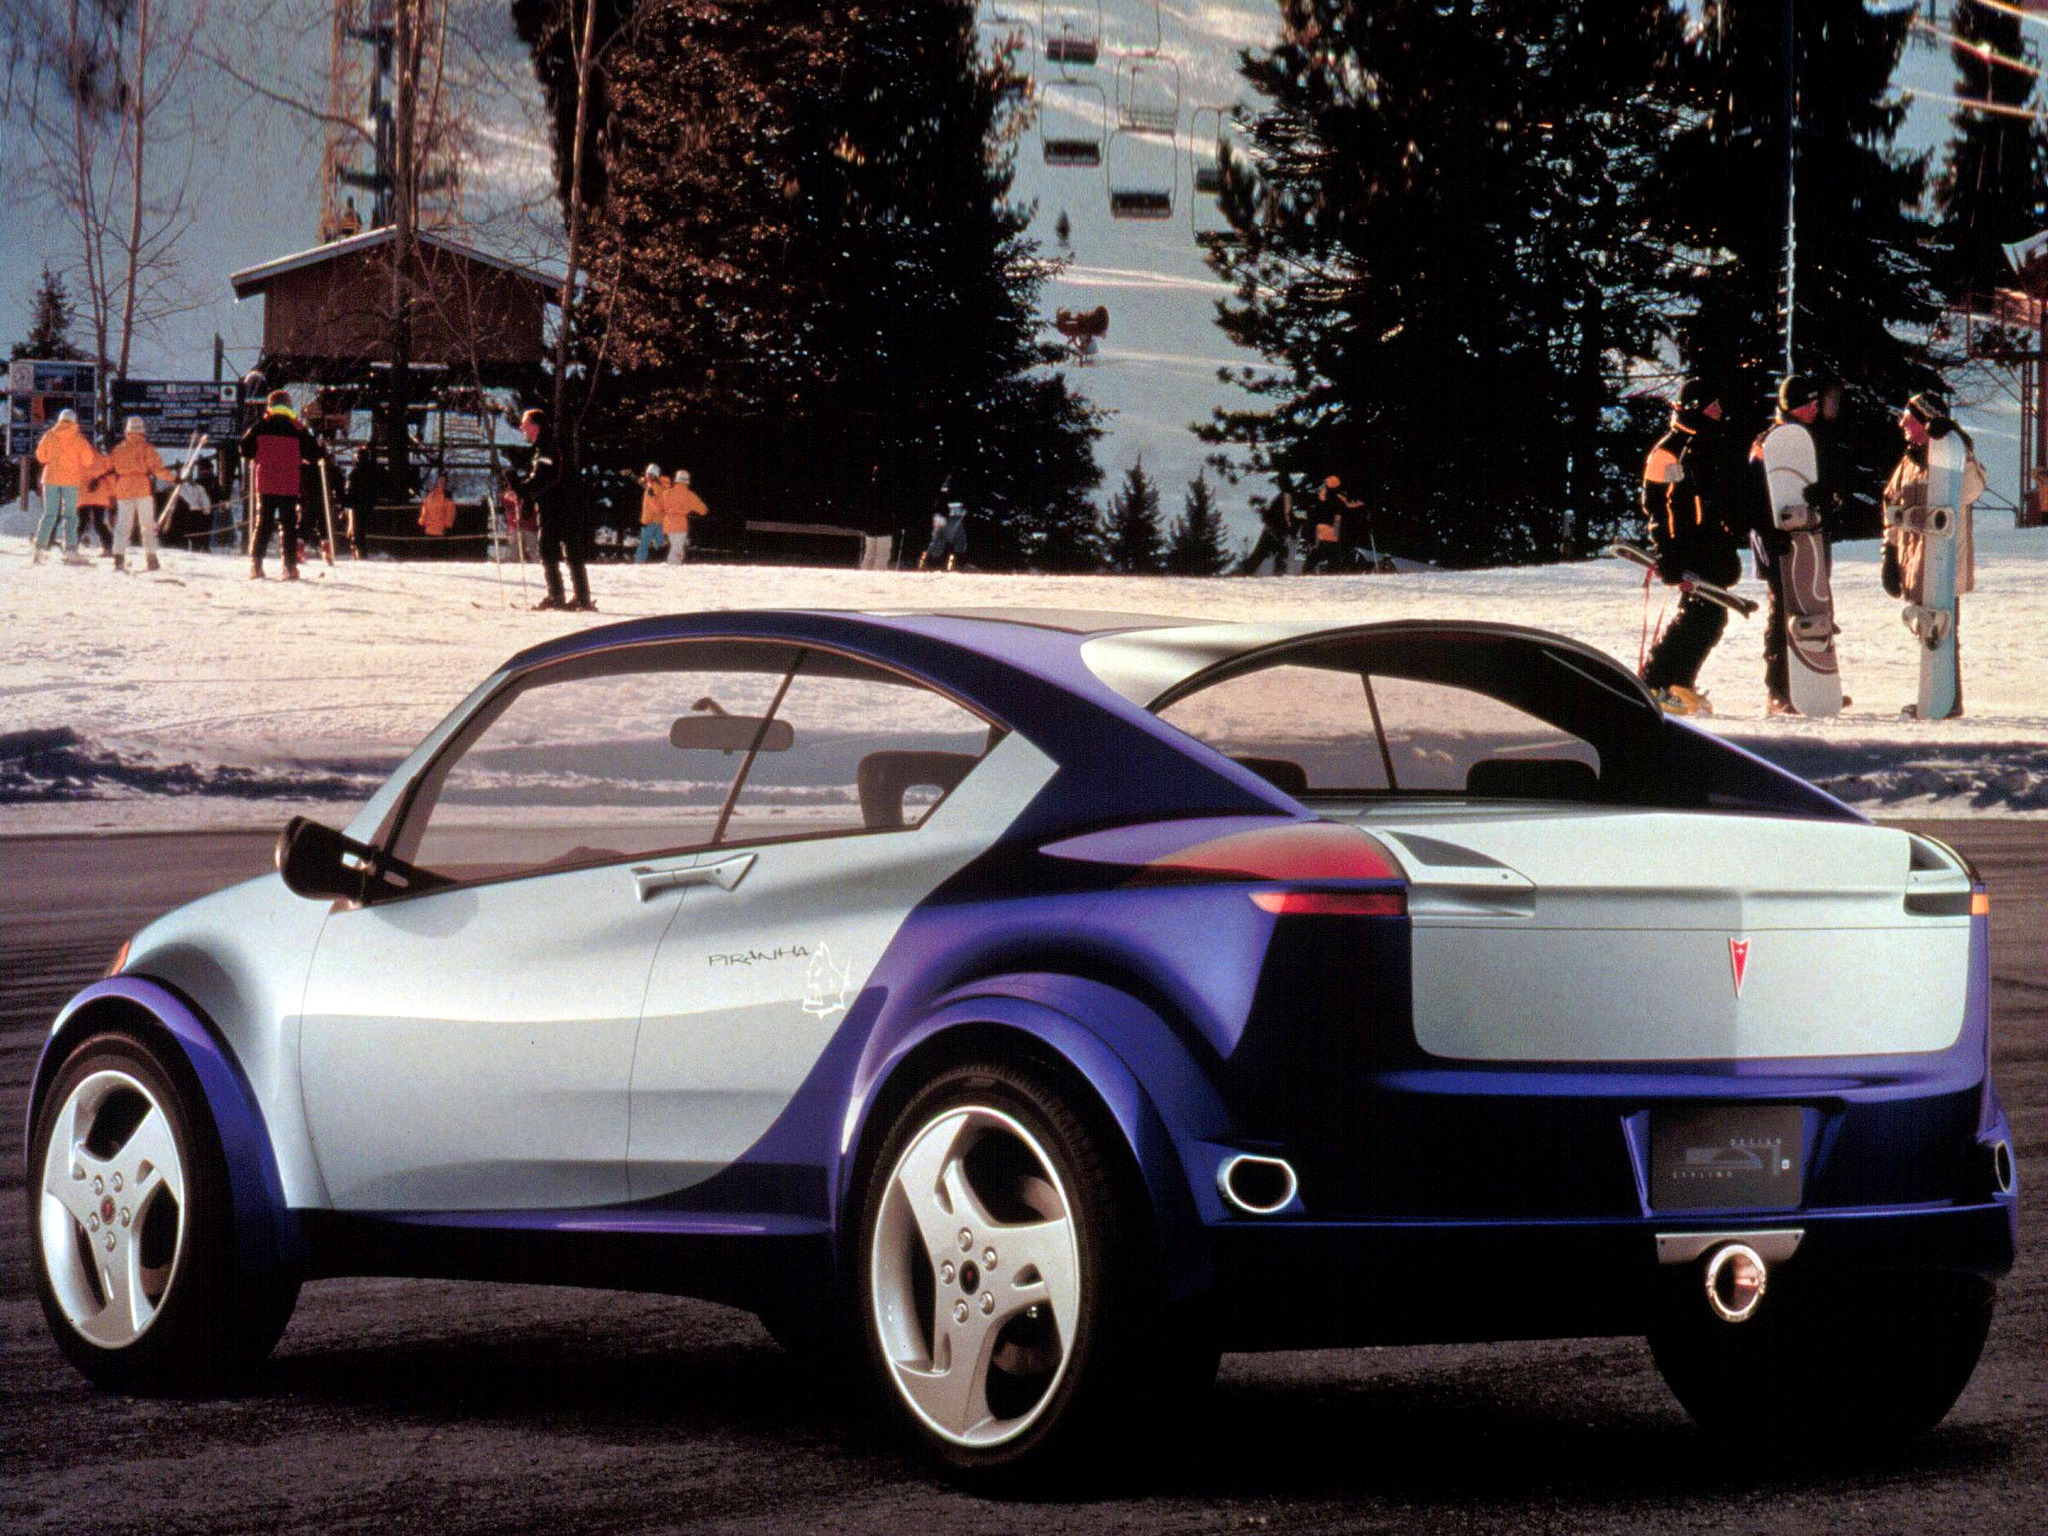 Pontiac Piranha Concept (2000) - Old Concept Cars